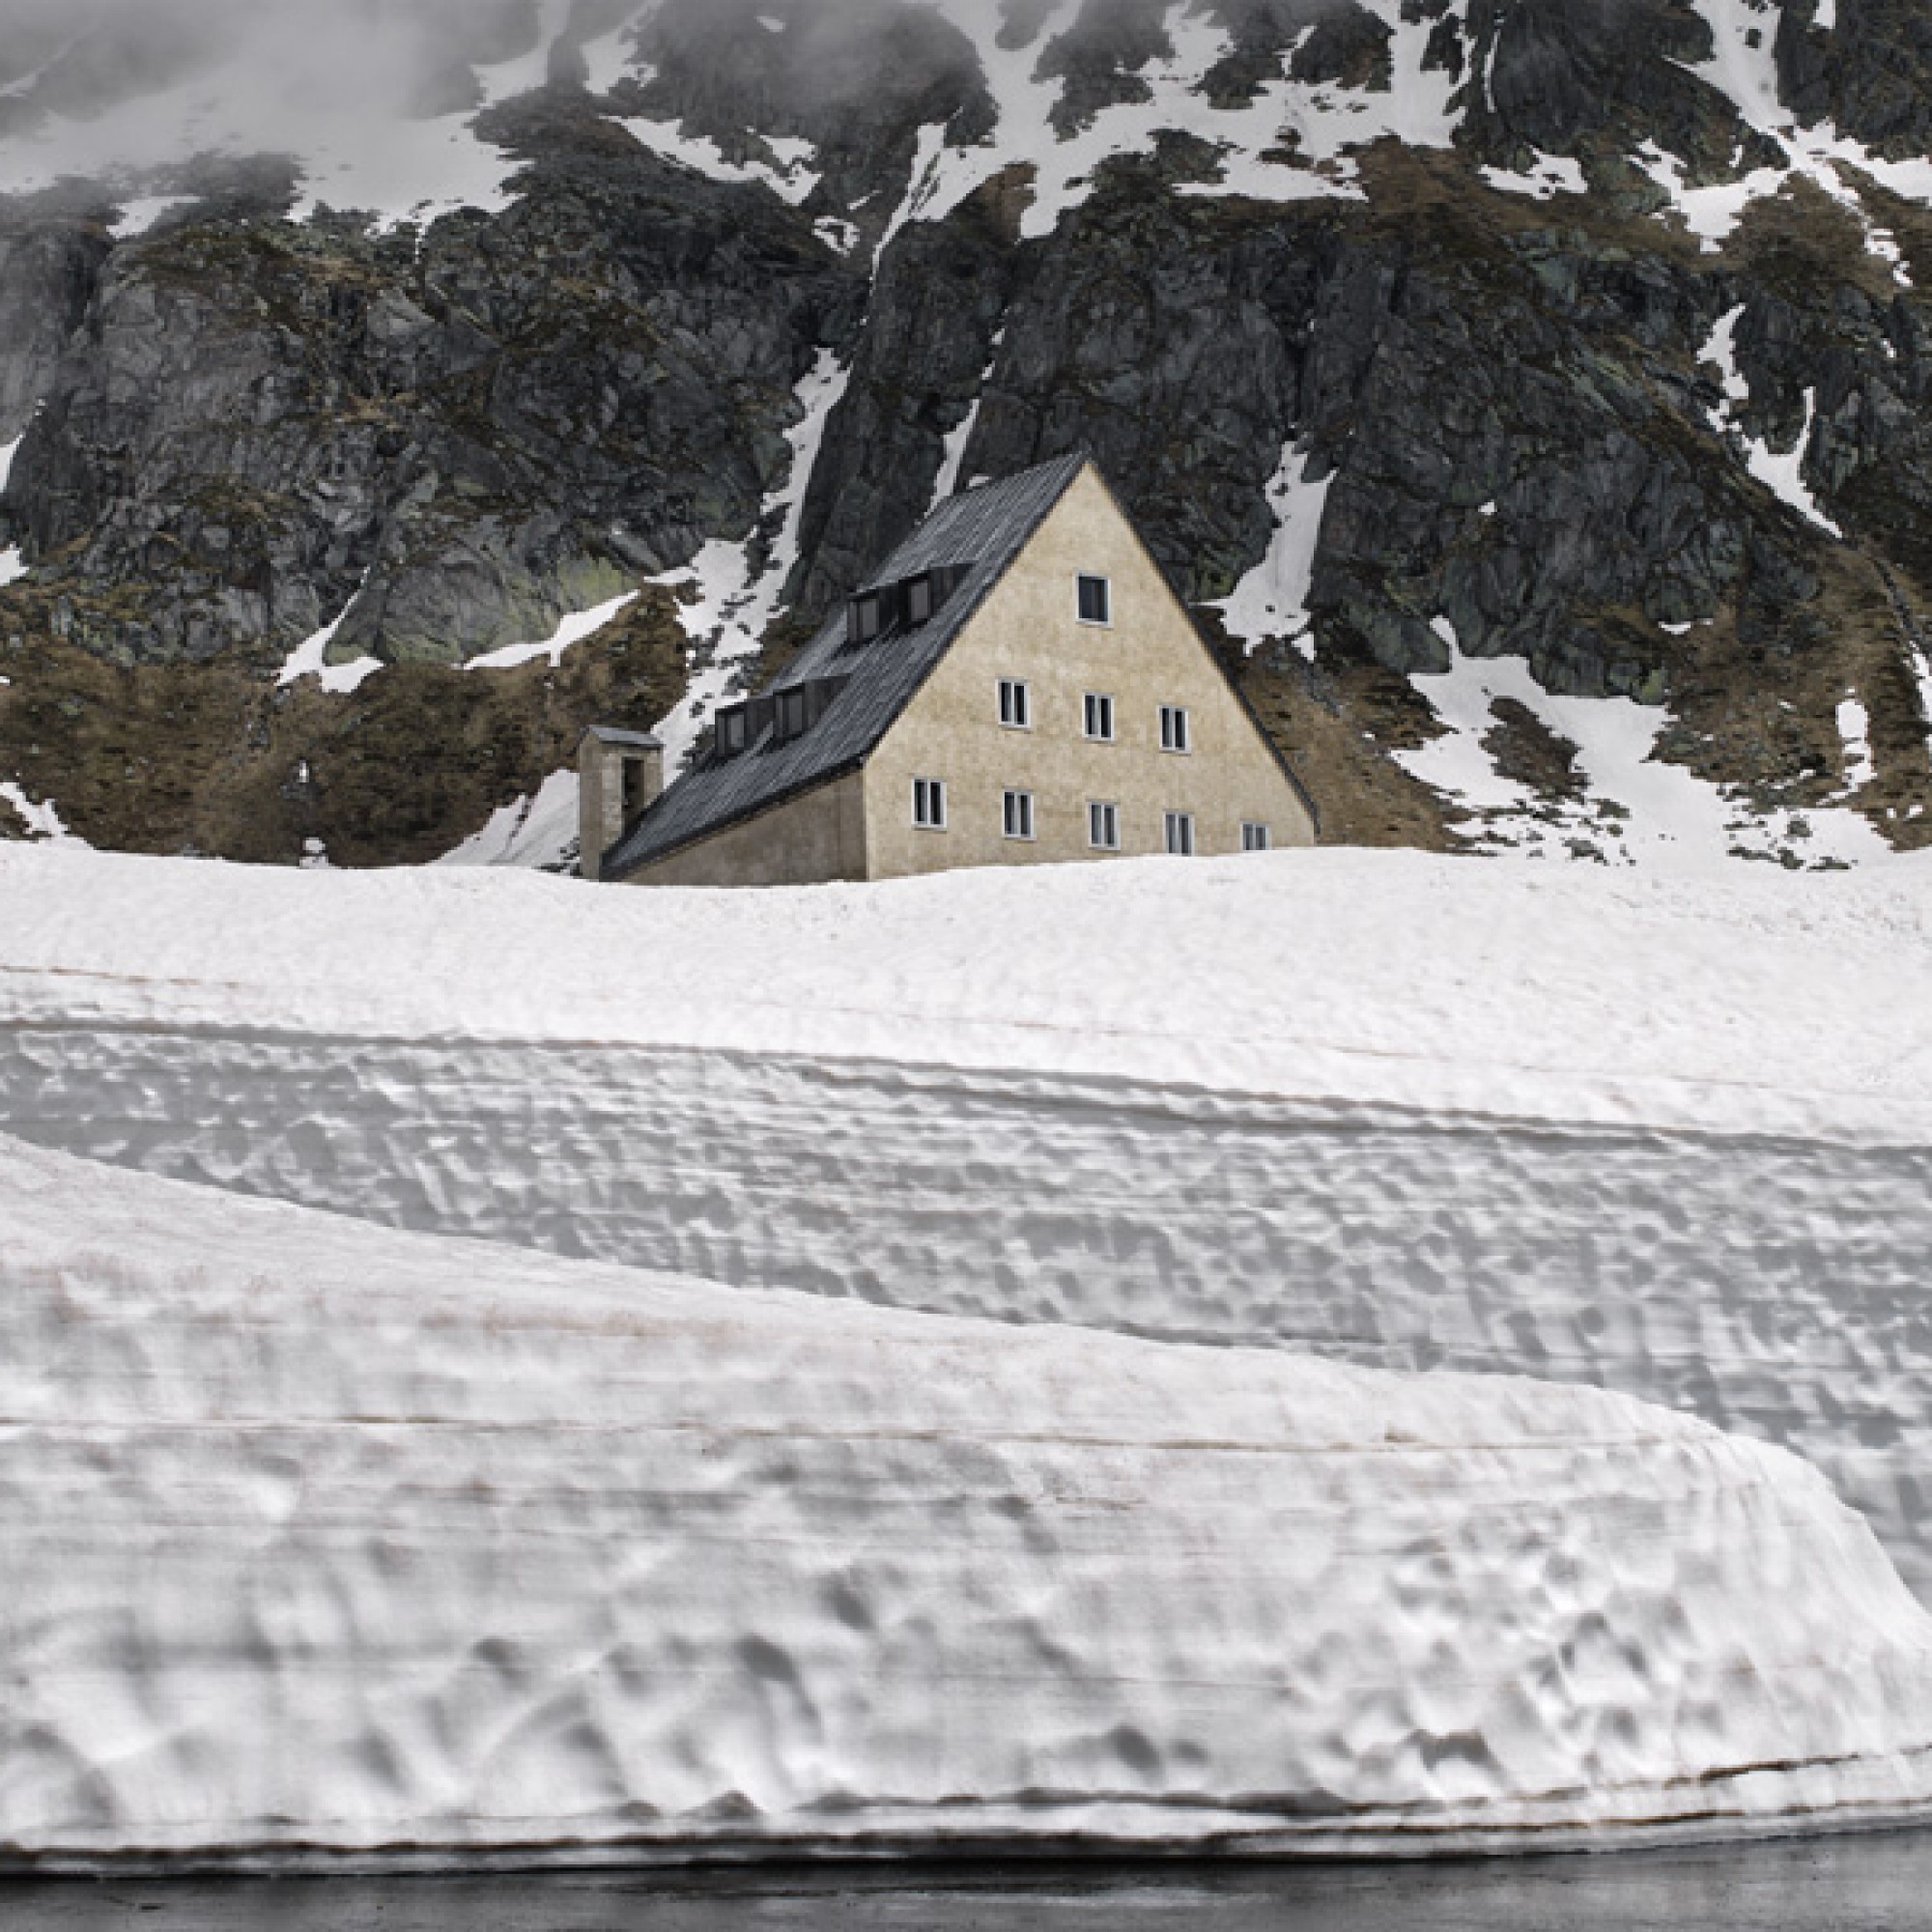 Aus der Serie "Gotthard" von Urs Bigler. (Swiss Photo Award/PD)